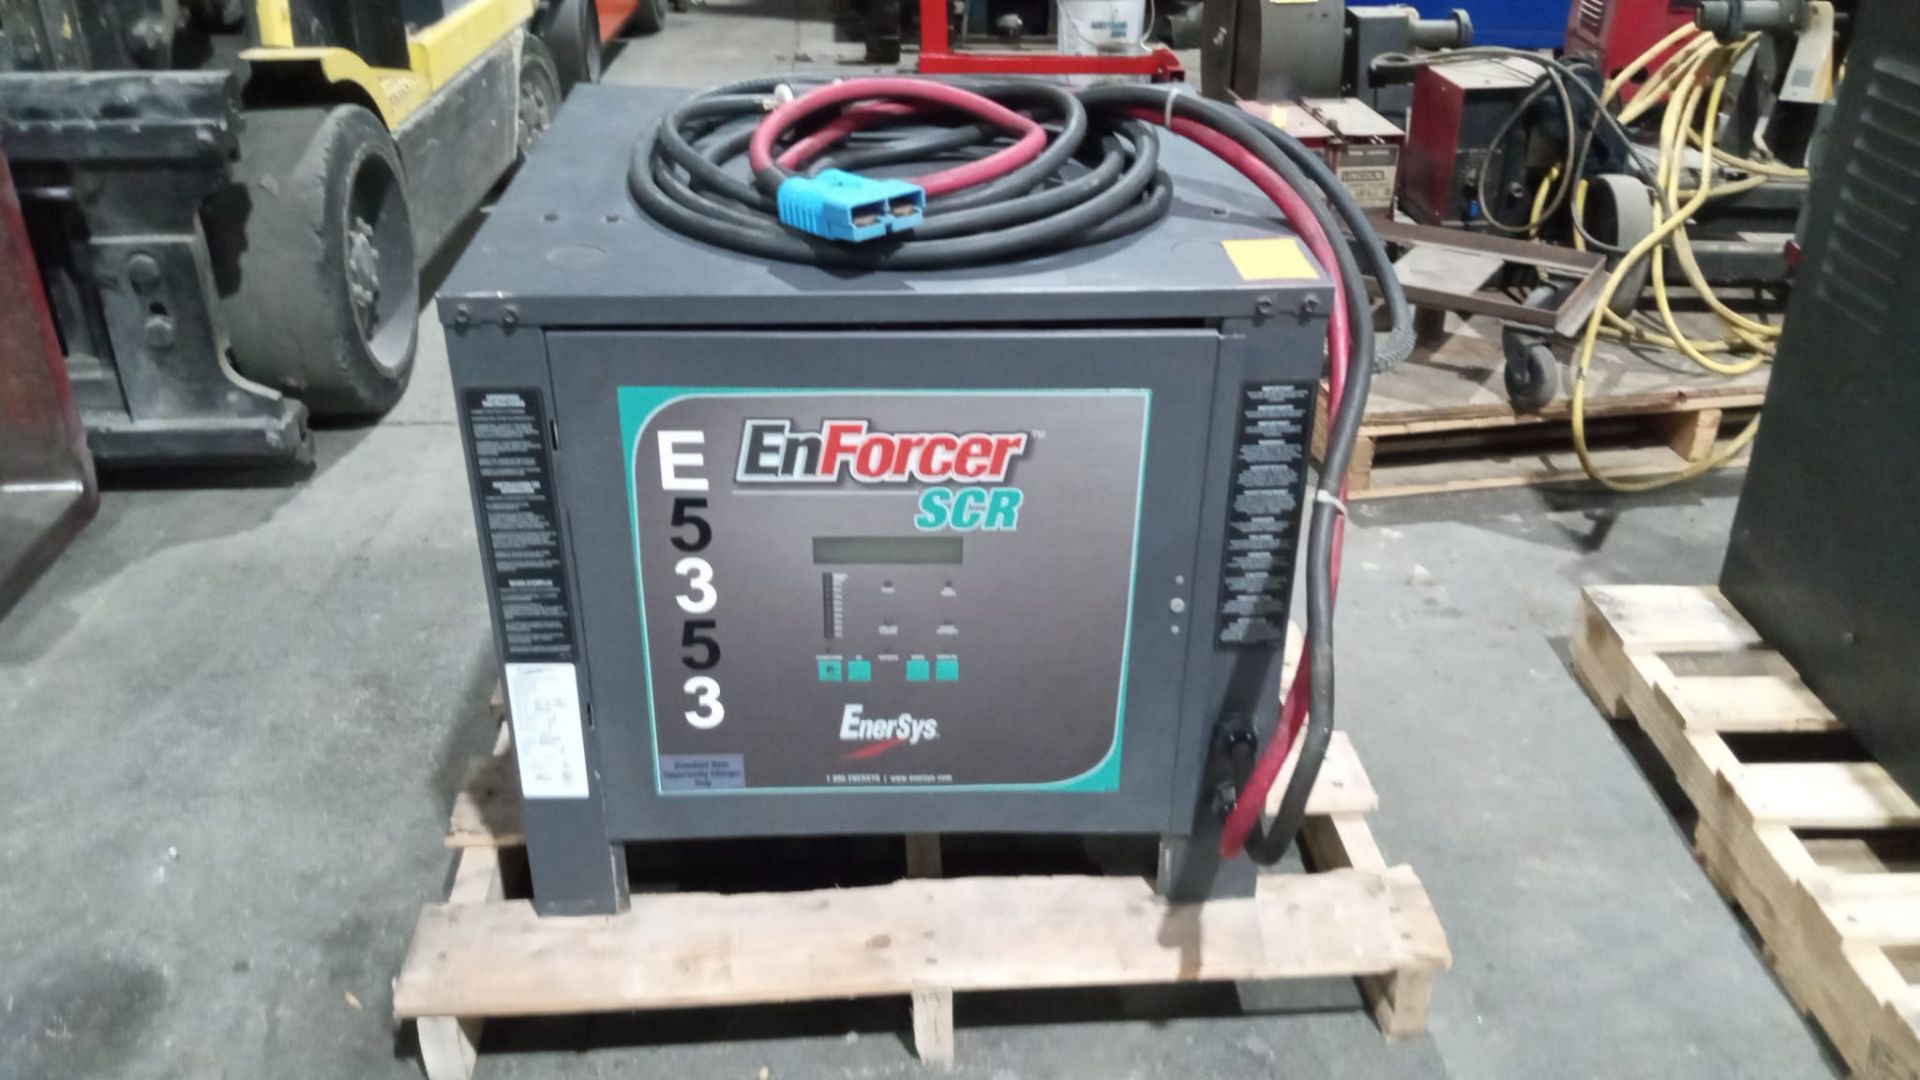 EnForcer SCR 48V Forklift Battery Charger 480/550/600V Input